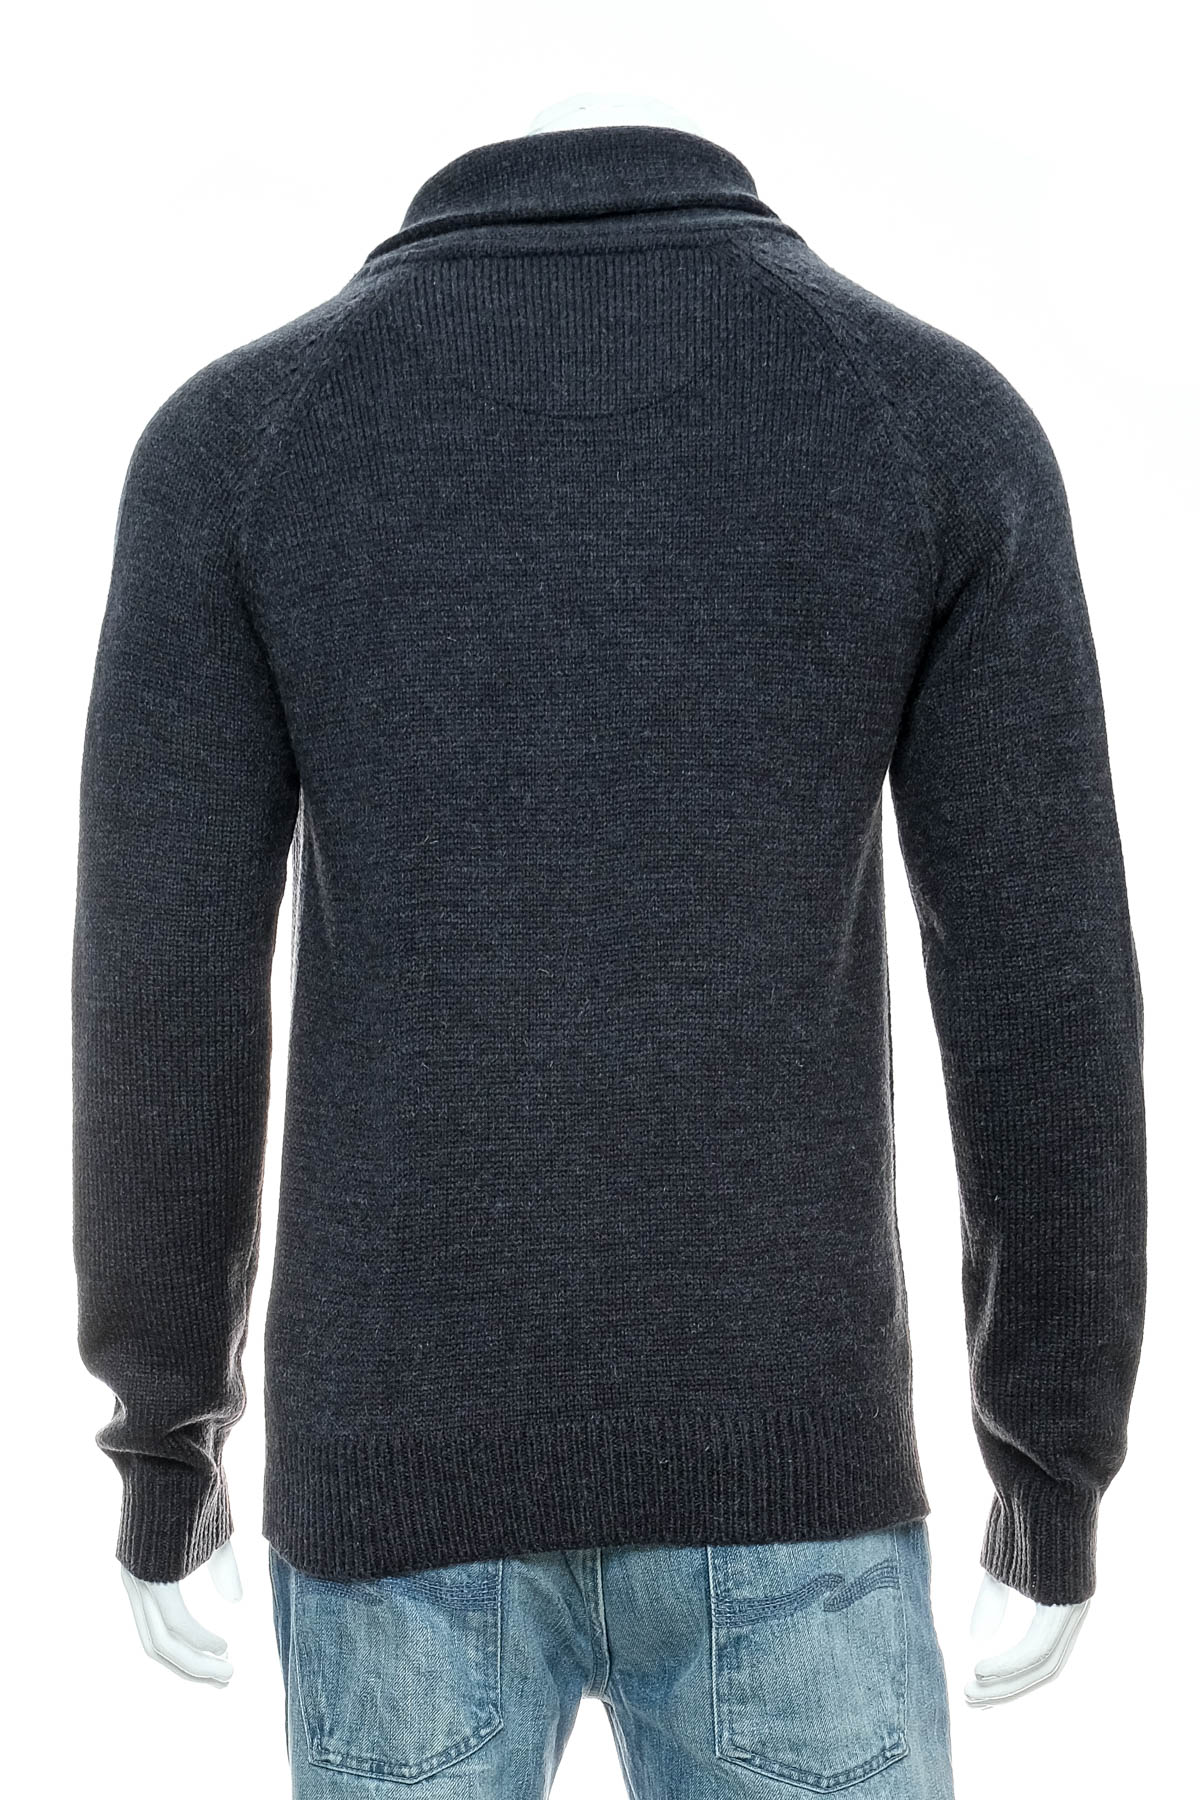 Men's sweater - Threadbare - 1